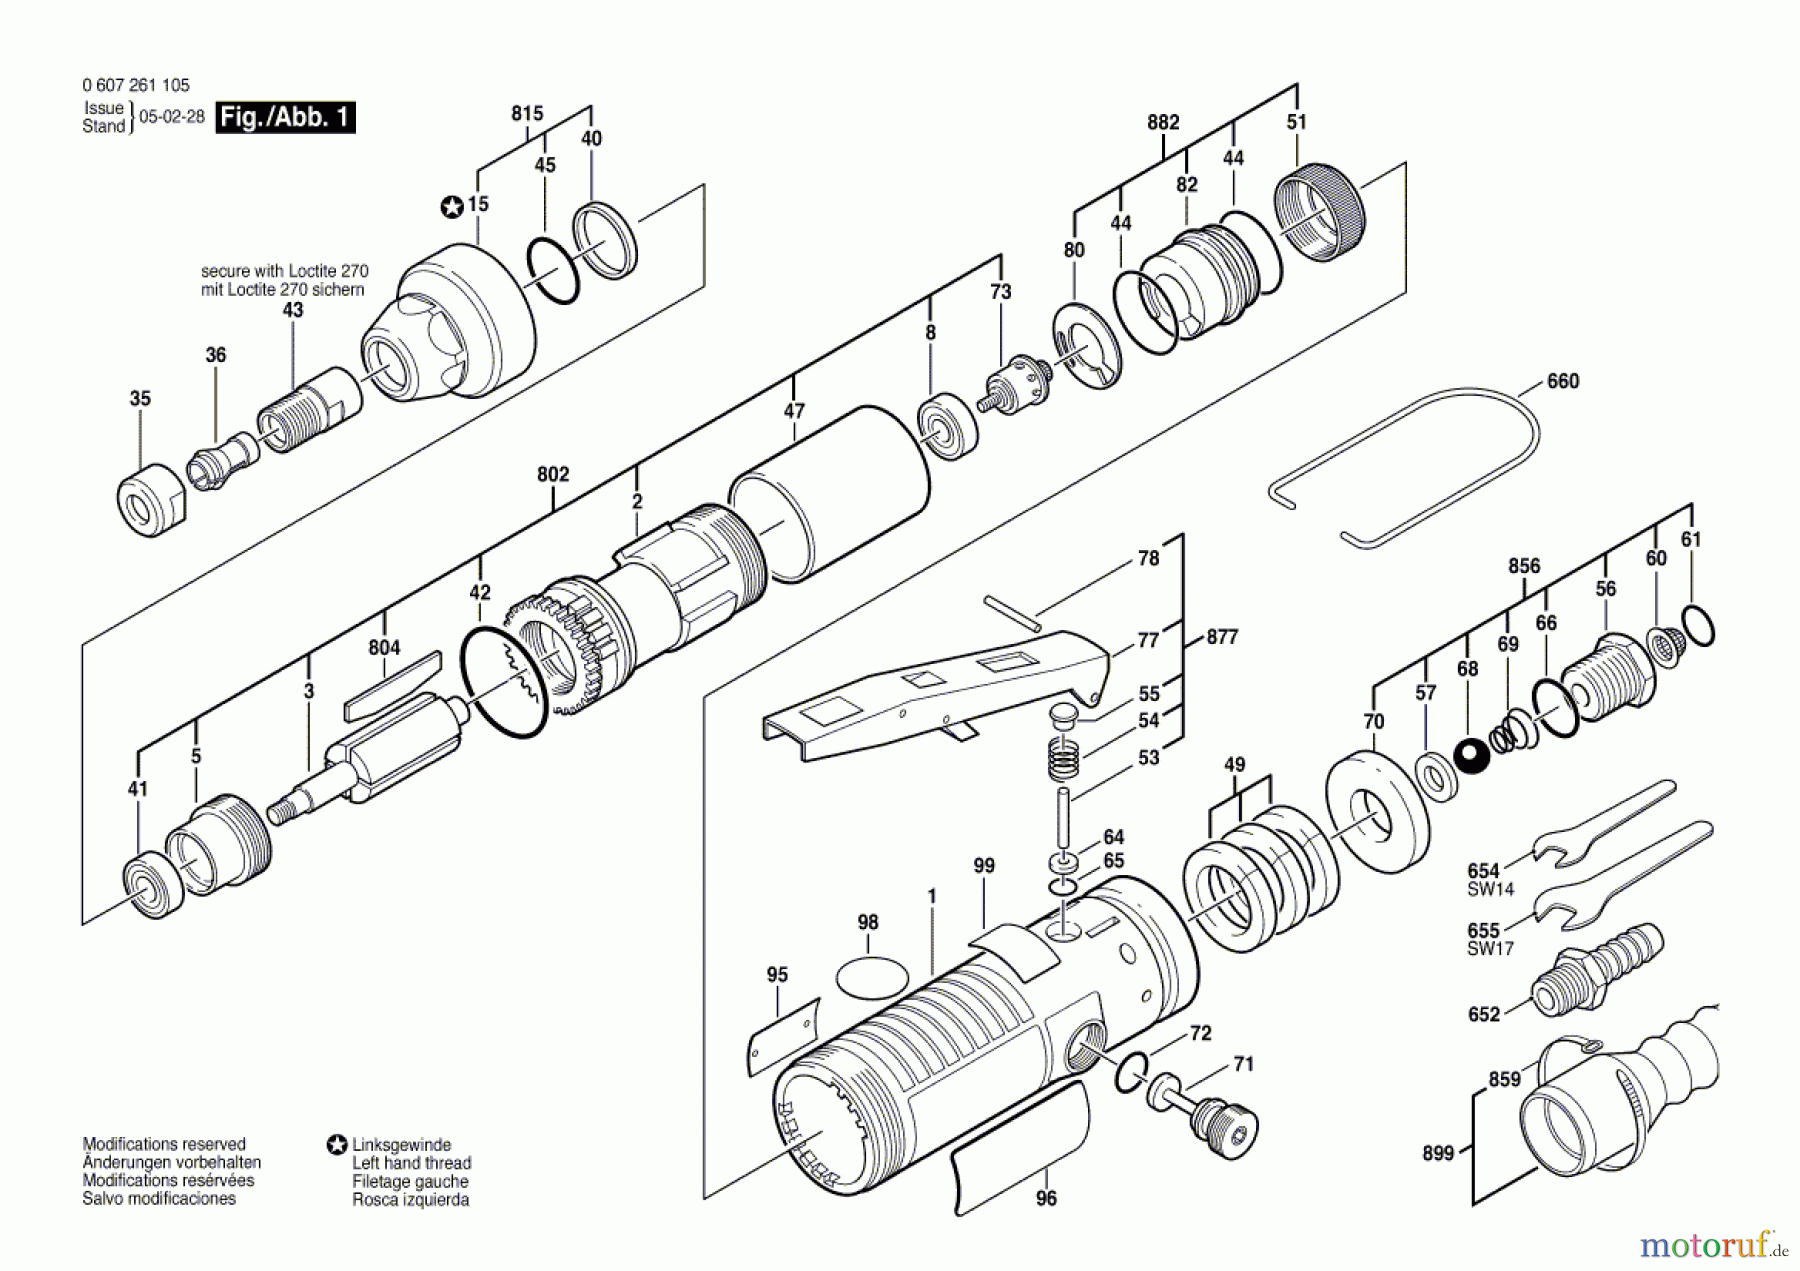  Bosch Werkzeug Pw-Geradschleifer 400 WATT-SERIE Seite 1